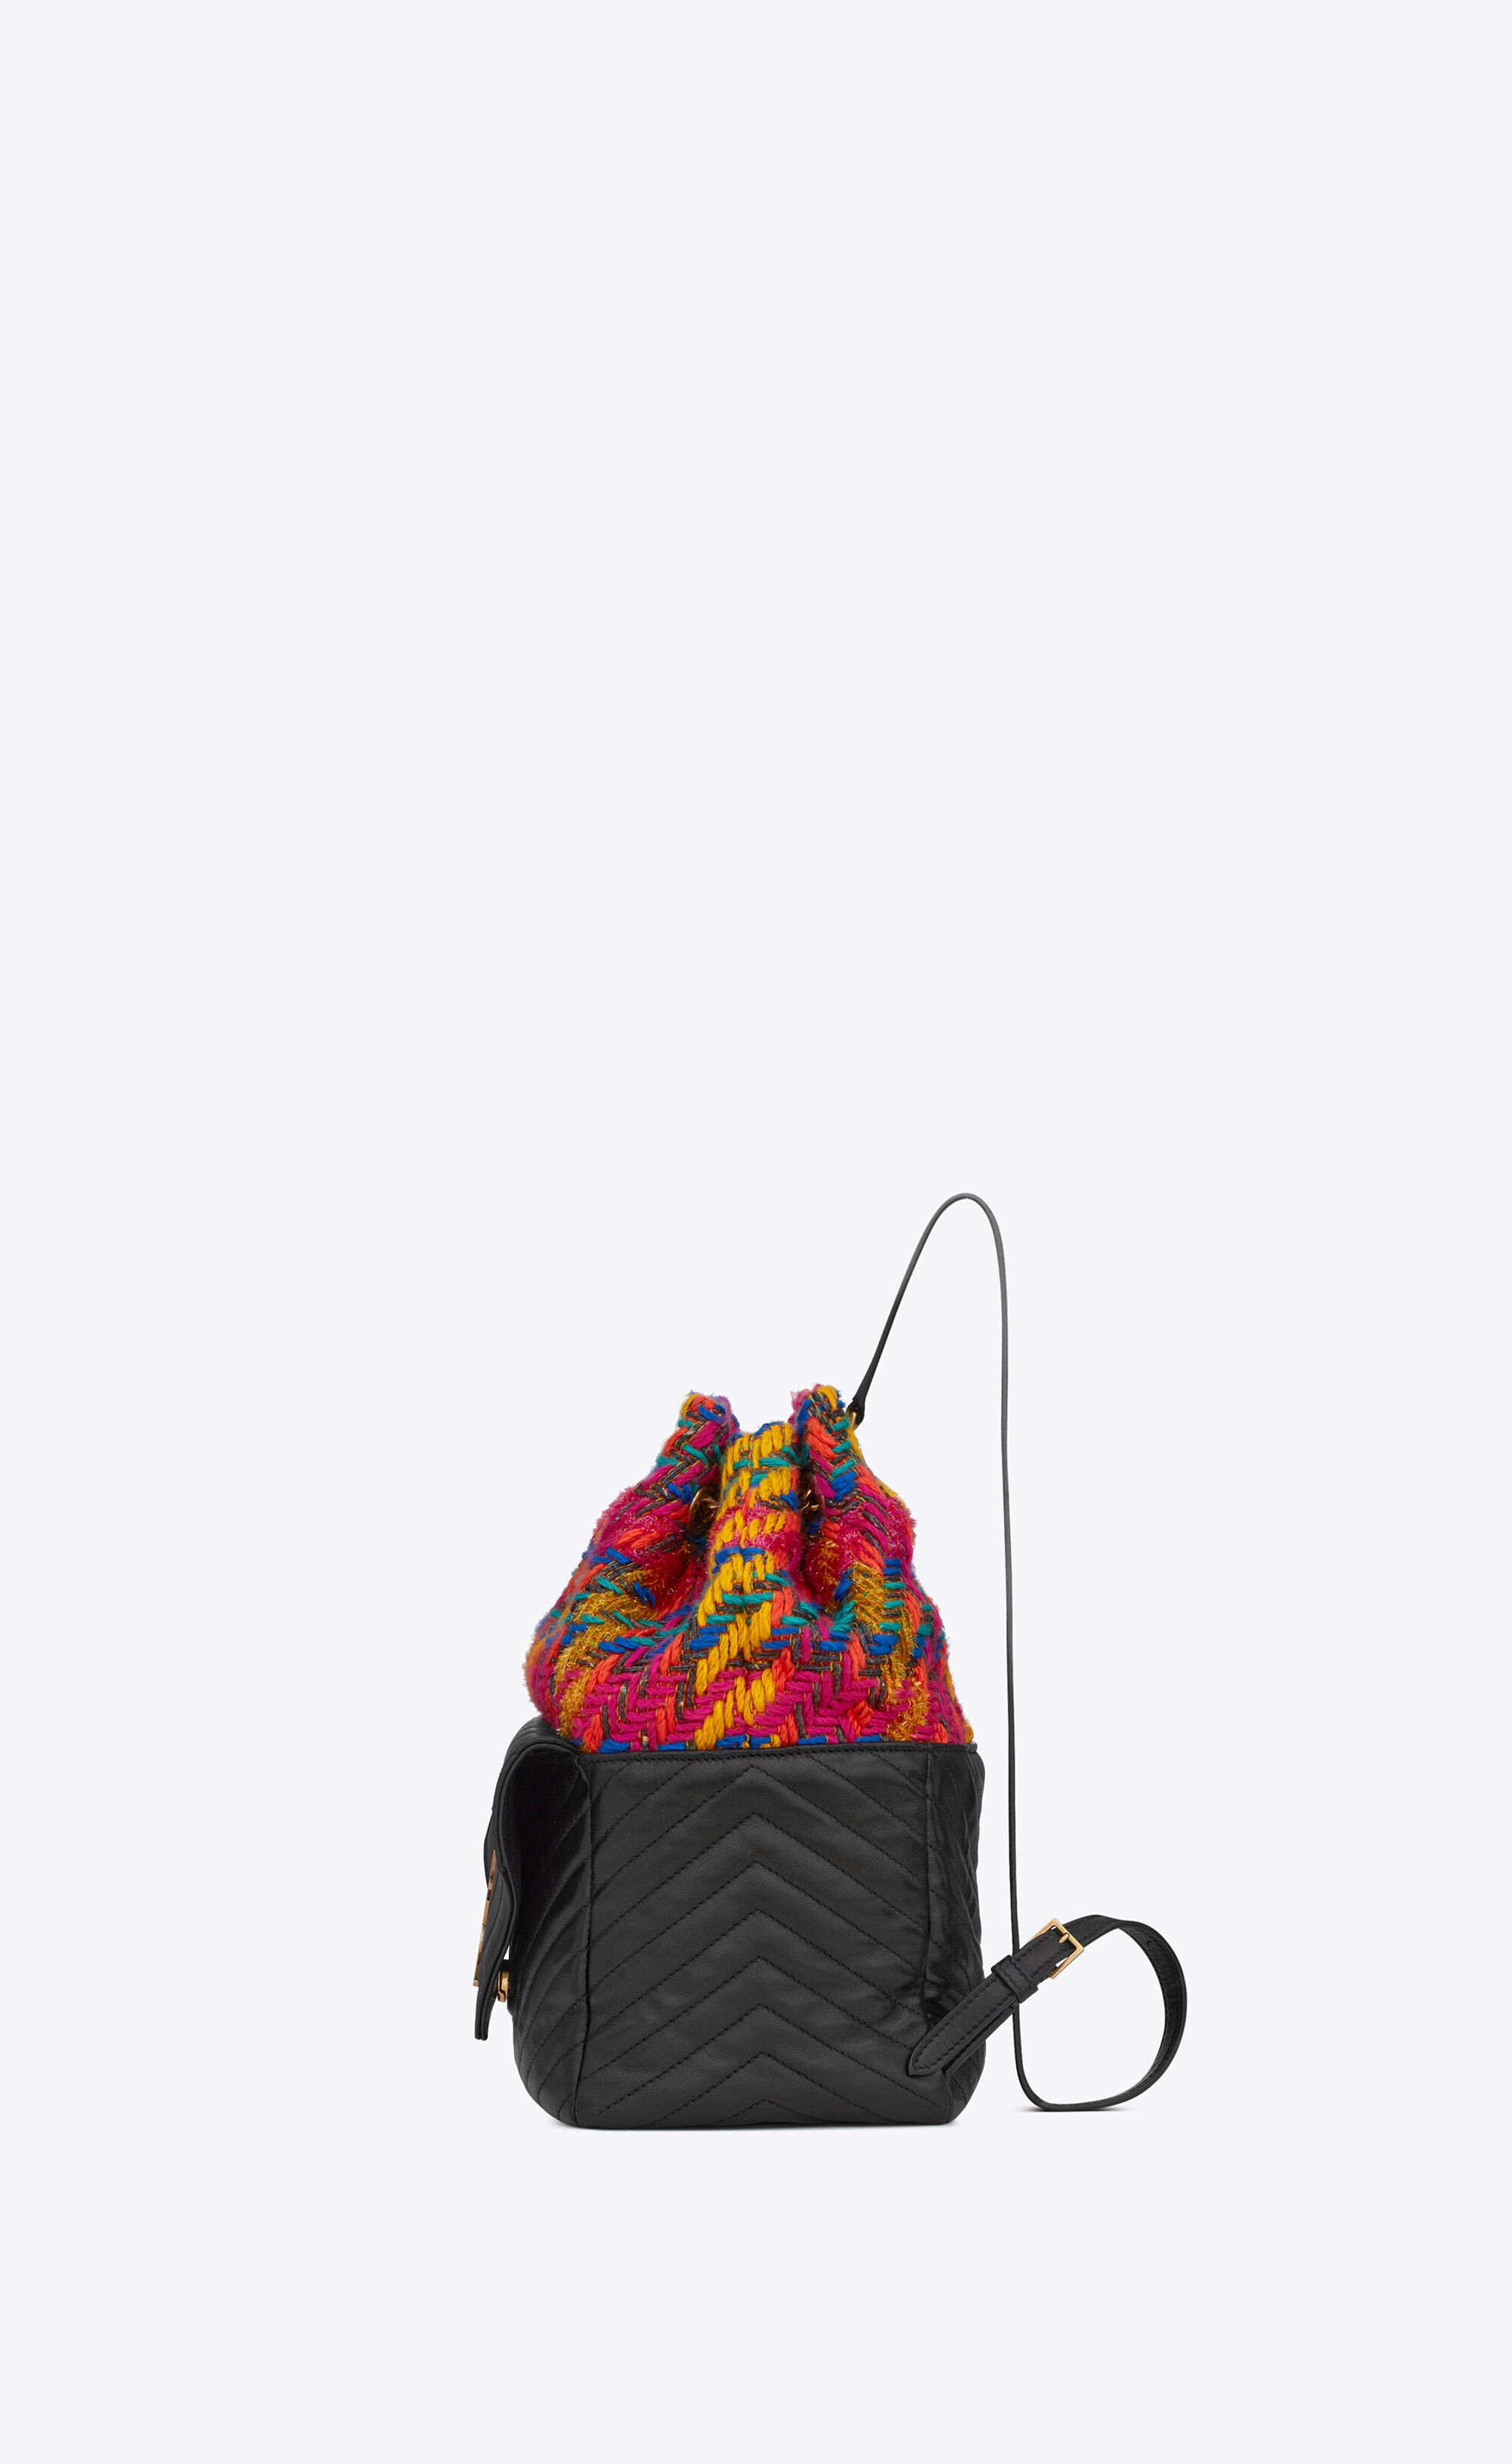 joe backpack in tweed and lambskin - 3